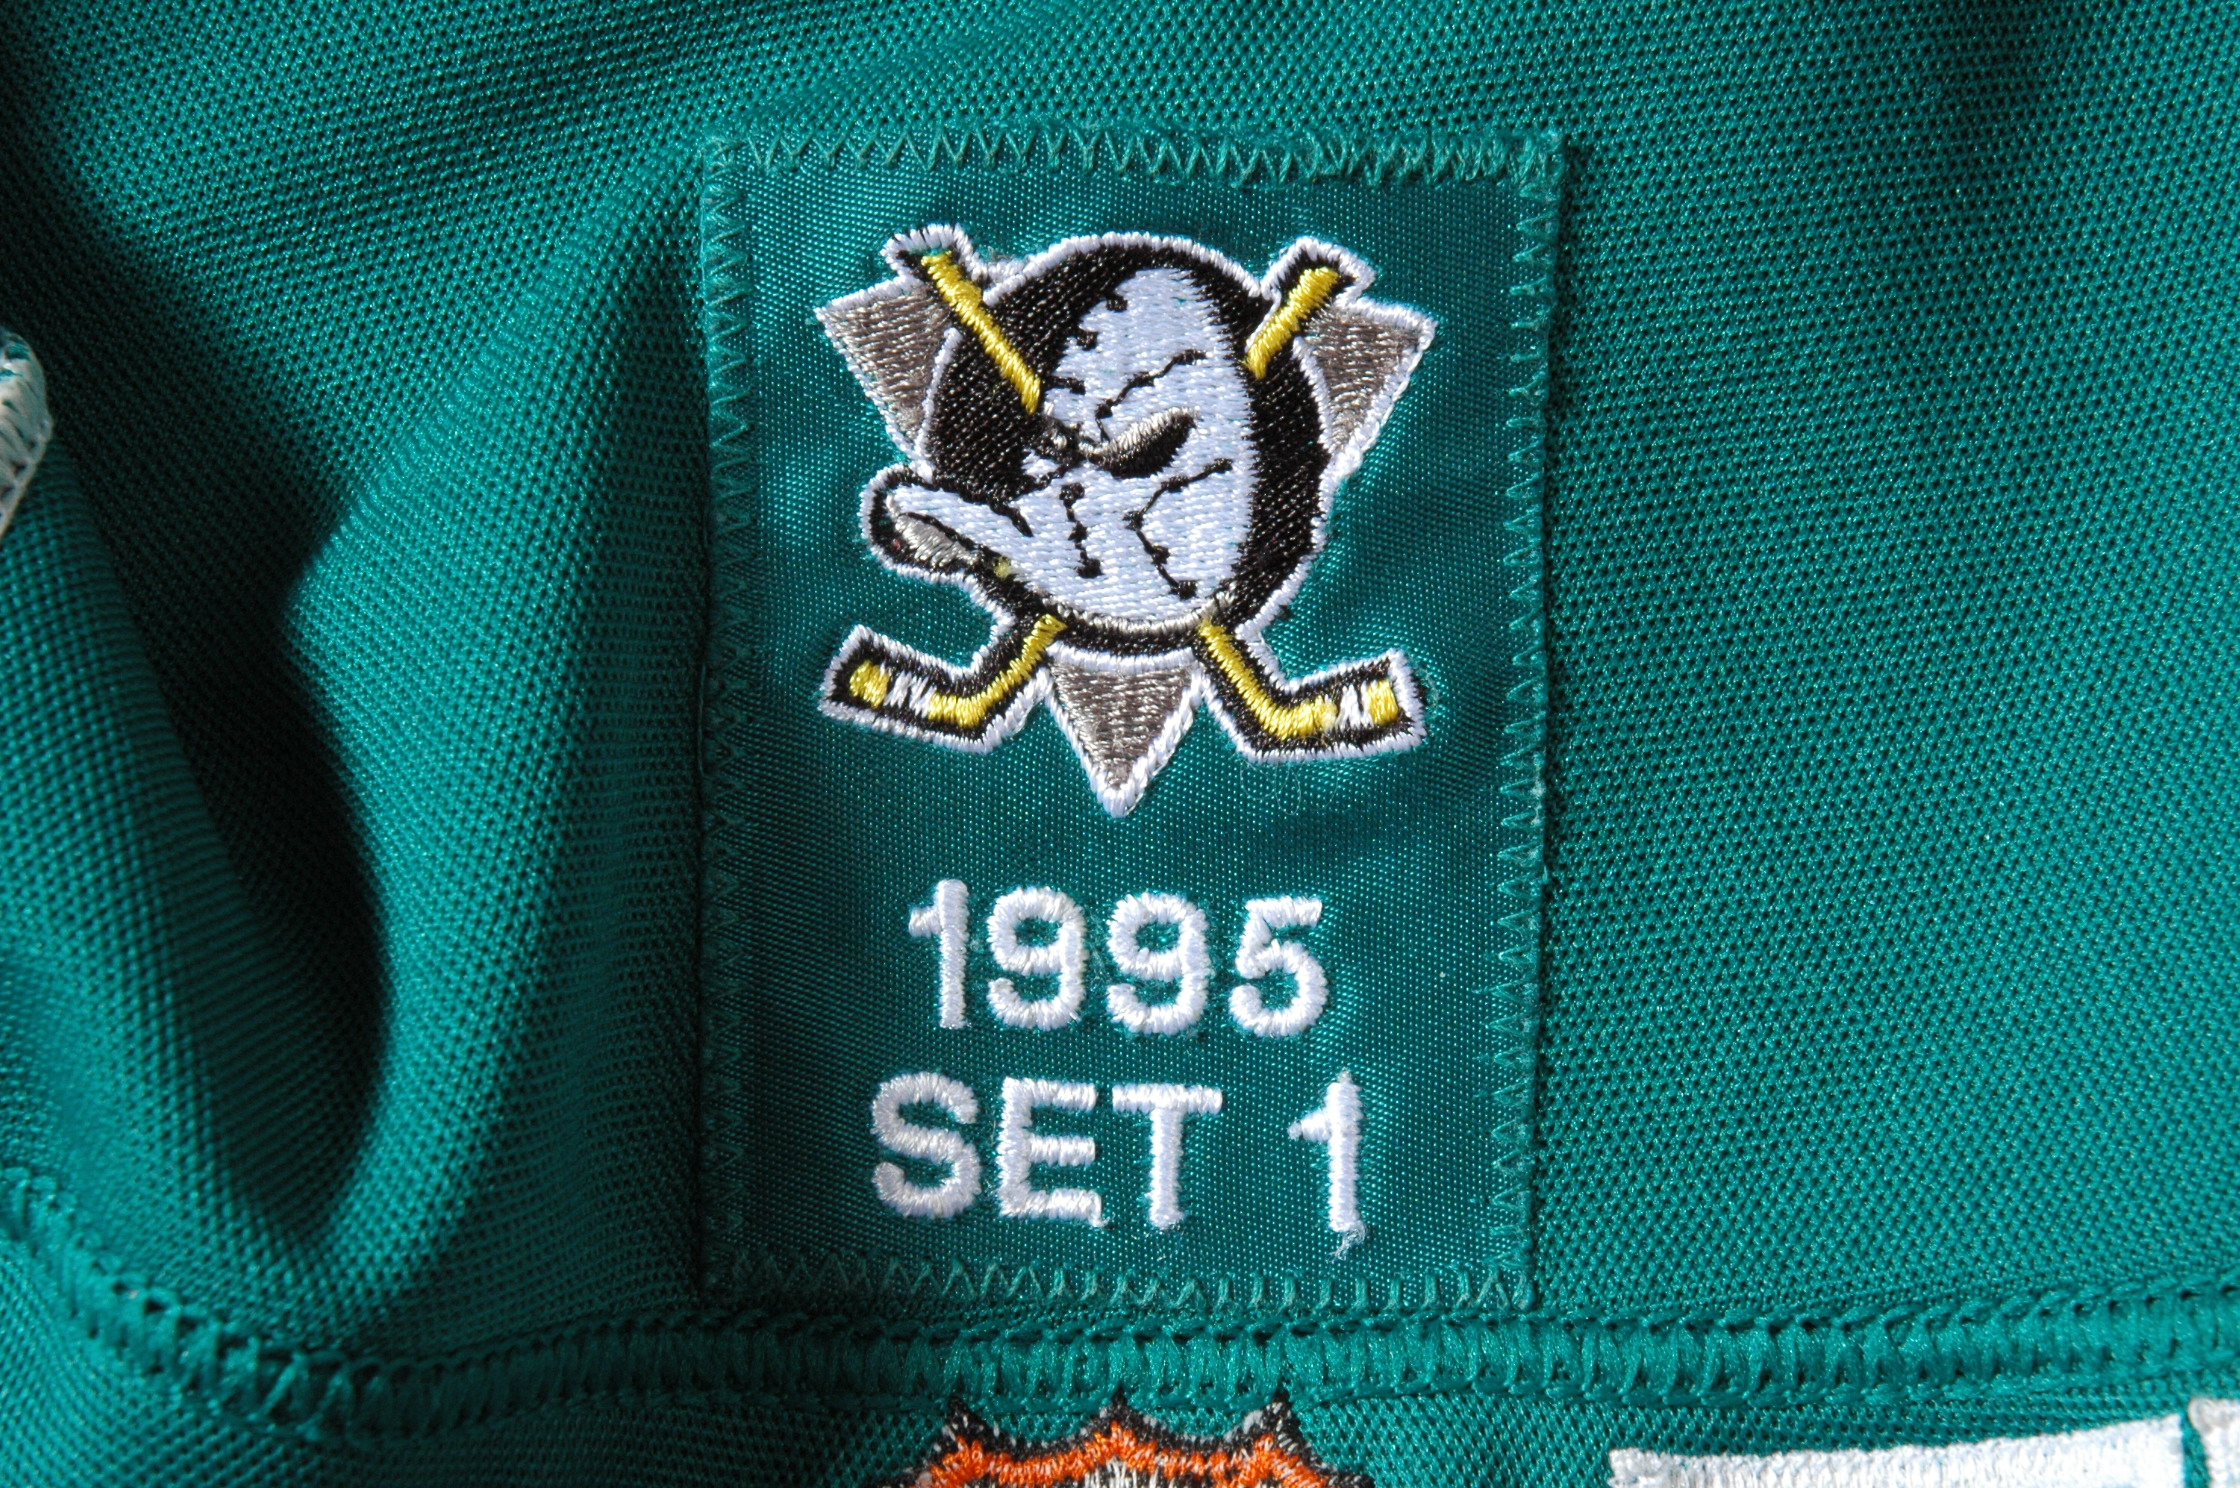 Mighty Ducks of Anaheim alternate jersey 1995/95